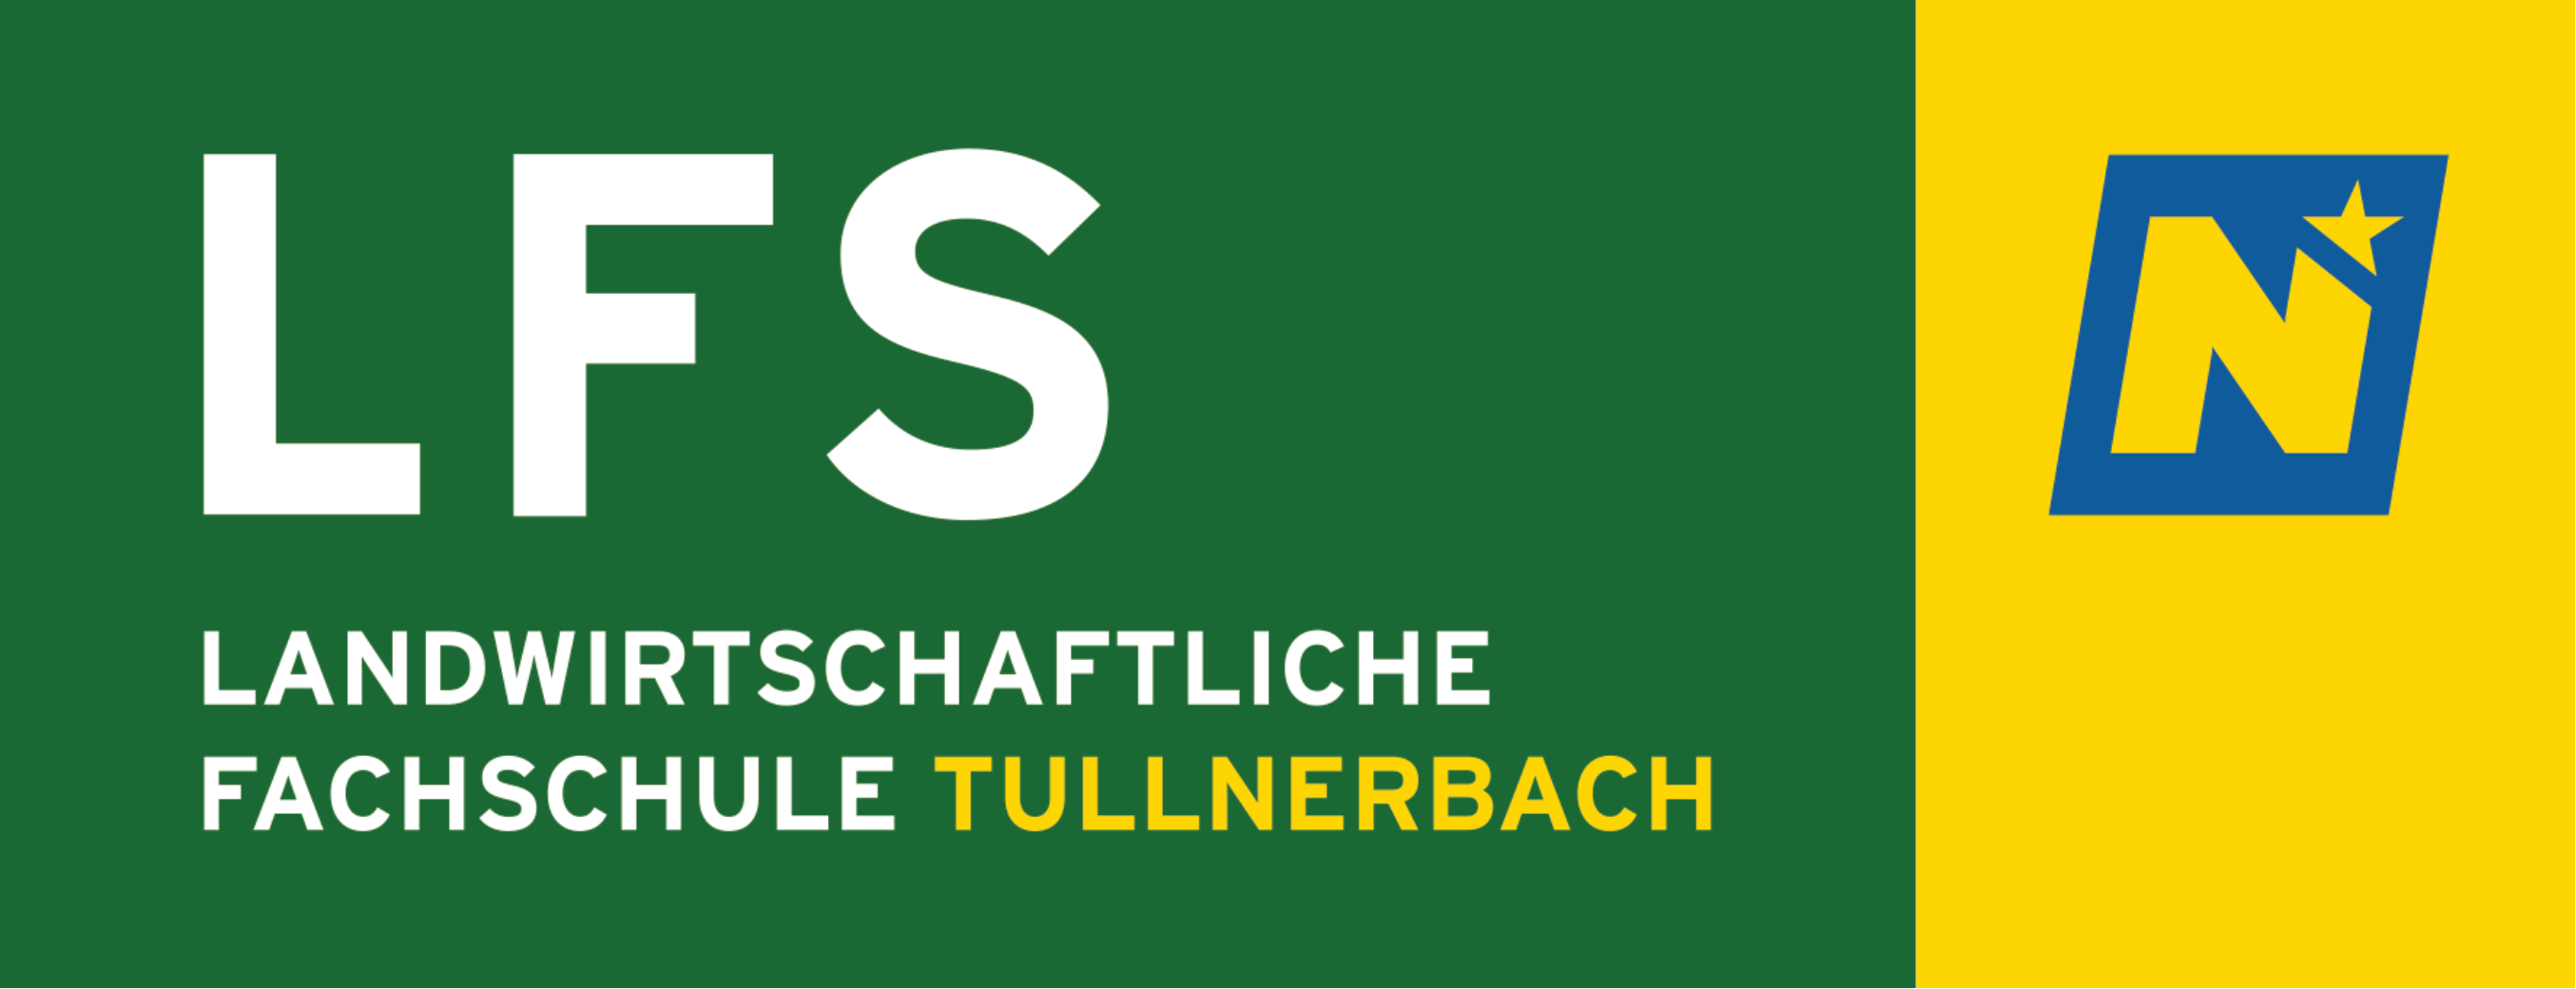 Werbelogo von Meldestelle LFS Tullnerbach